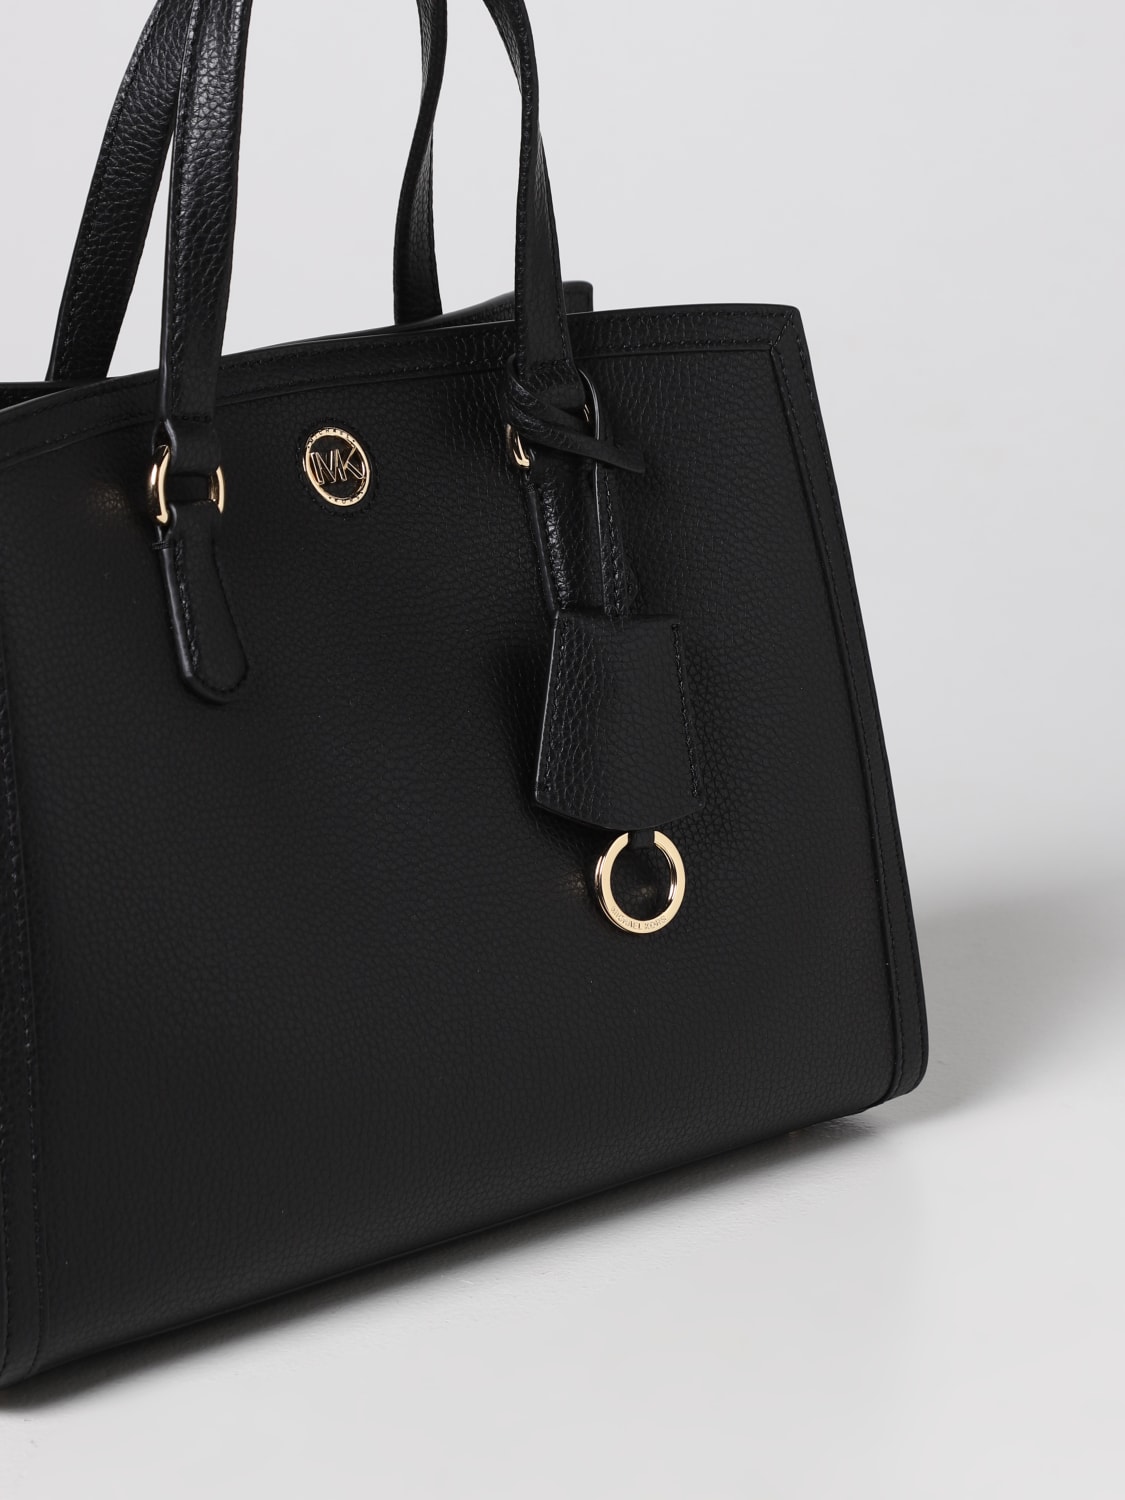 Michael Kors Outlet: handbag for woman - Black | Michael Kors handbag ...